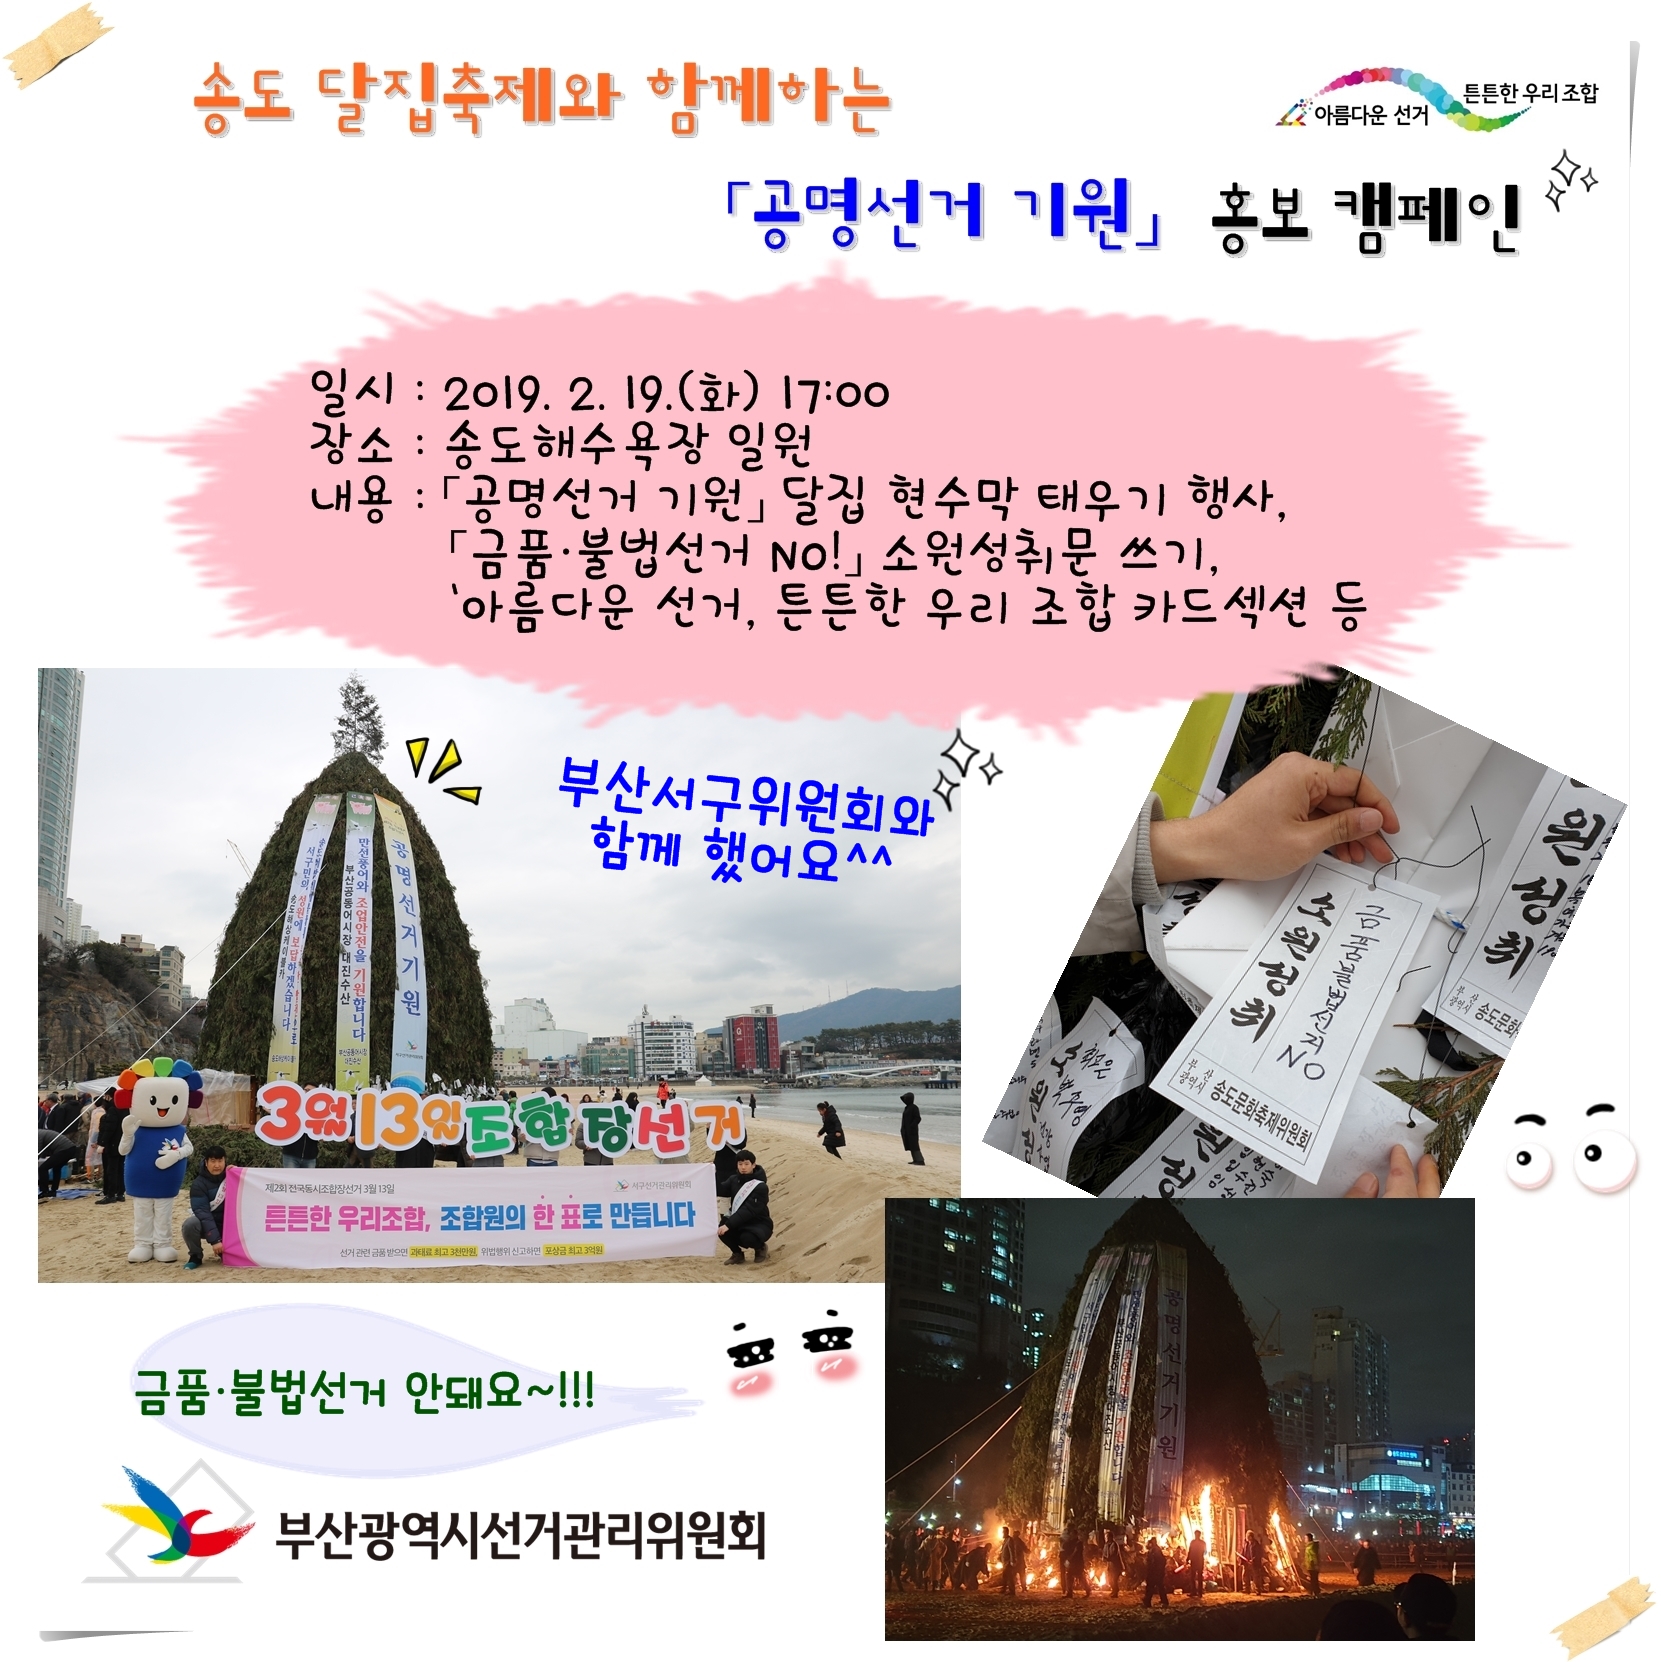 송도 달집축제외 함께하는 공명선거 기원 홍보 캠페인 